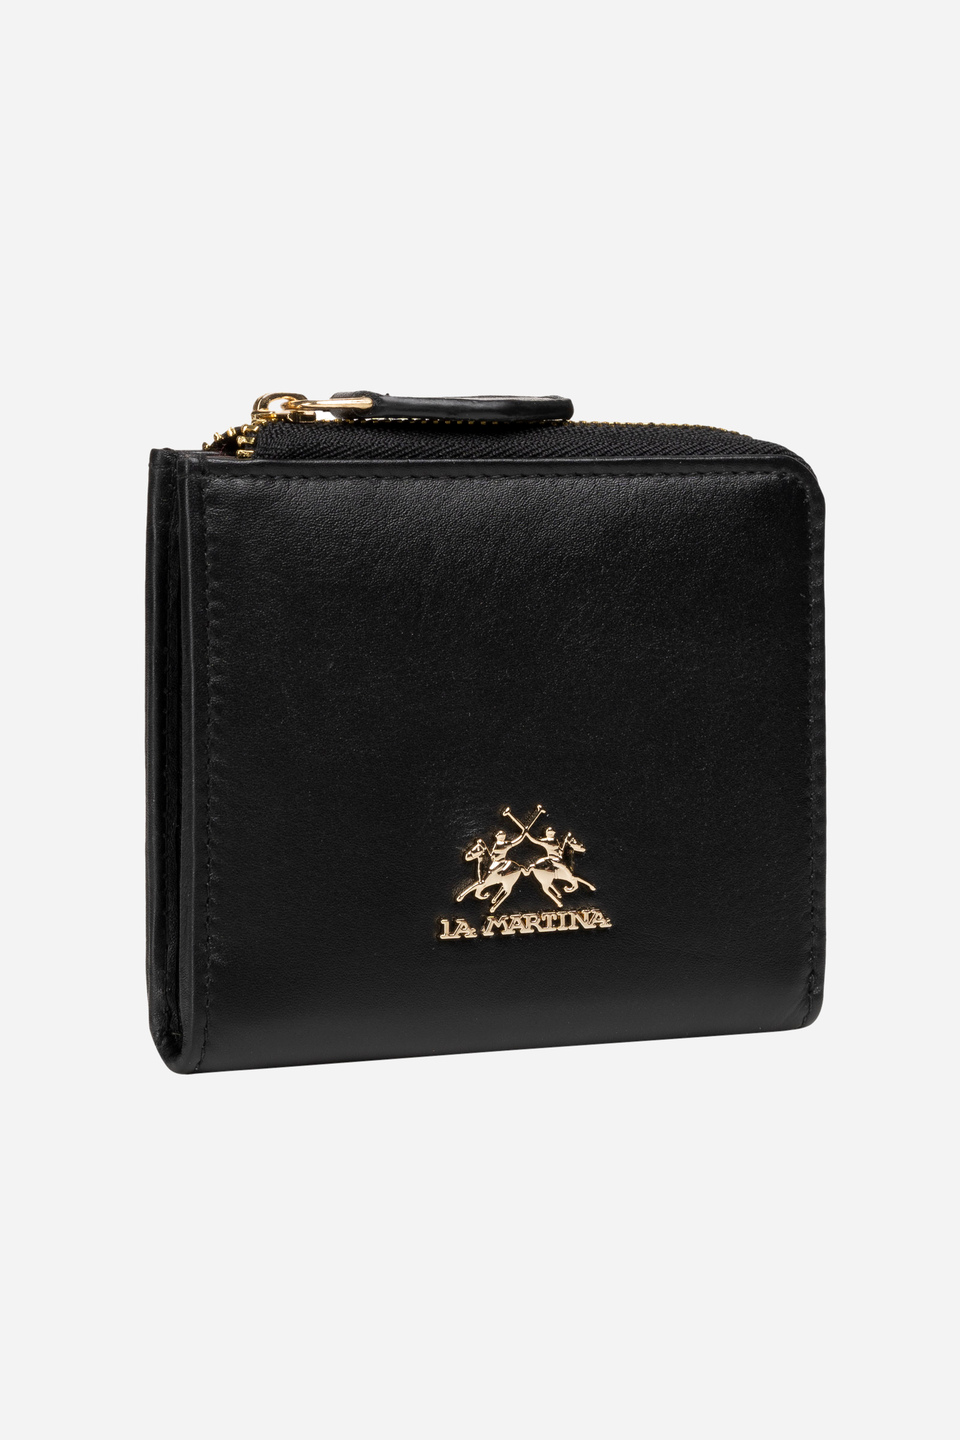 Calfskin wallet - Heritage | La Martina - Official Online Shop